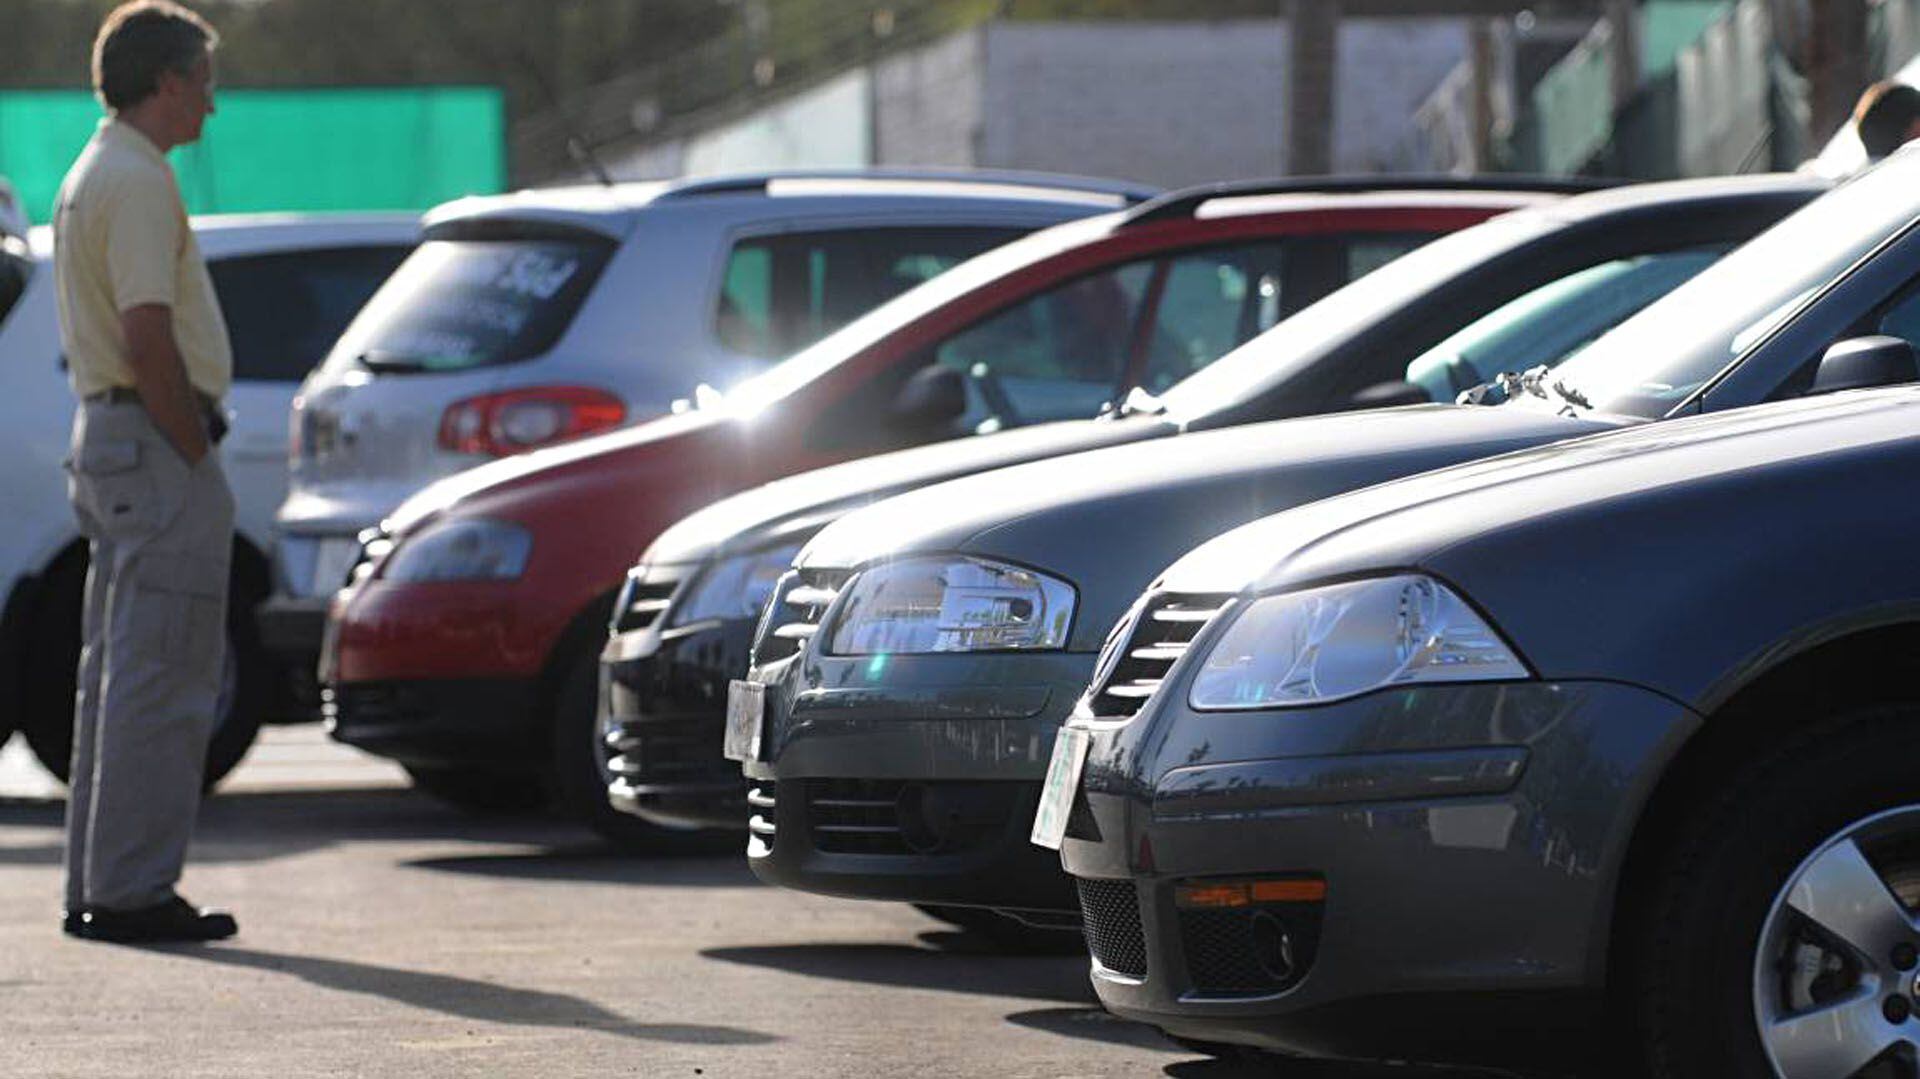 Comprar un auto requiere en Argentina más trámites que en el resto de los países de la región. Lo que se cuestiona es el motivo de esa complejidad, que tiene mayores costos en los Registros de la propiedad automotor